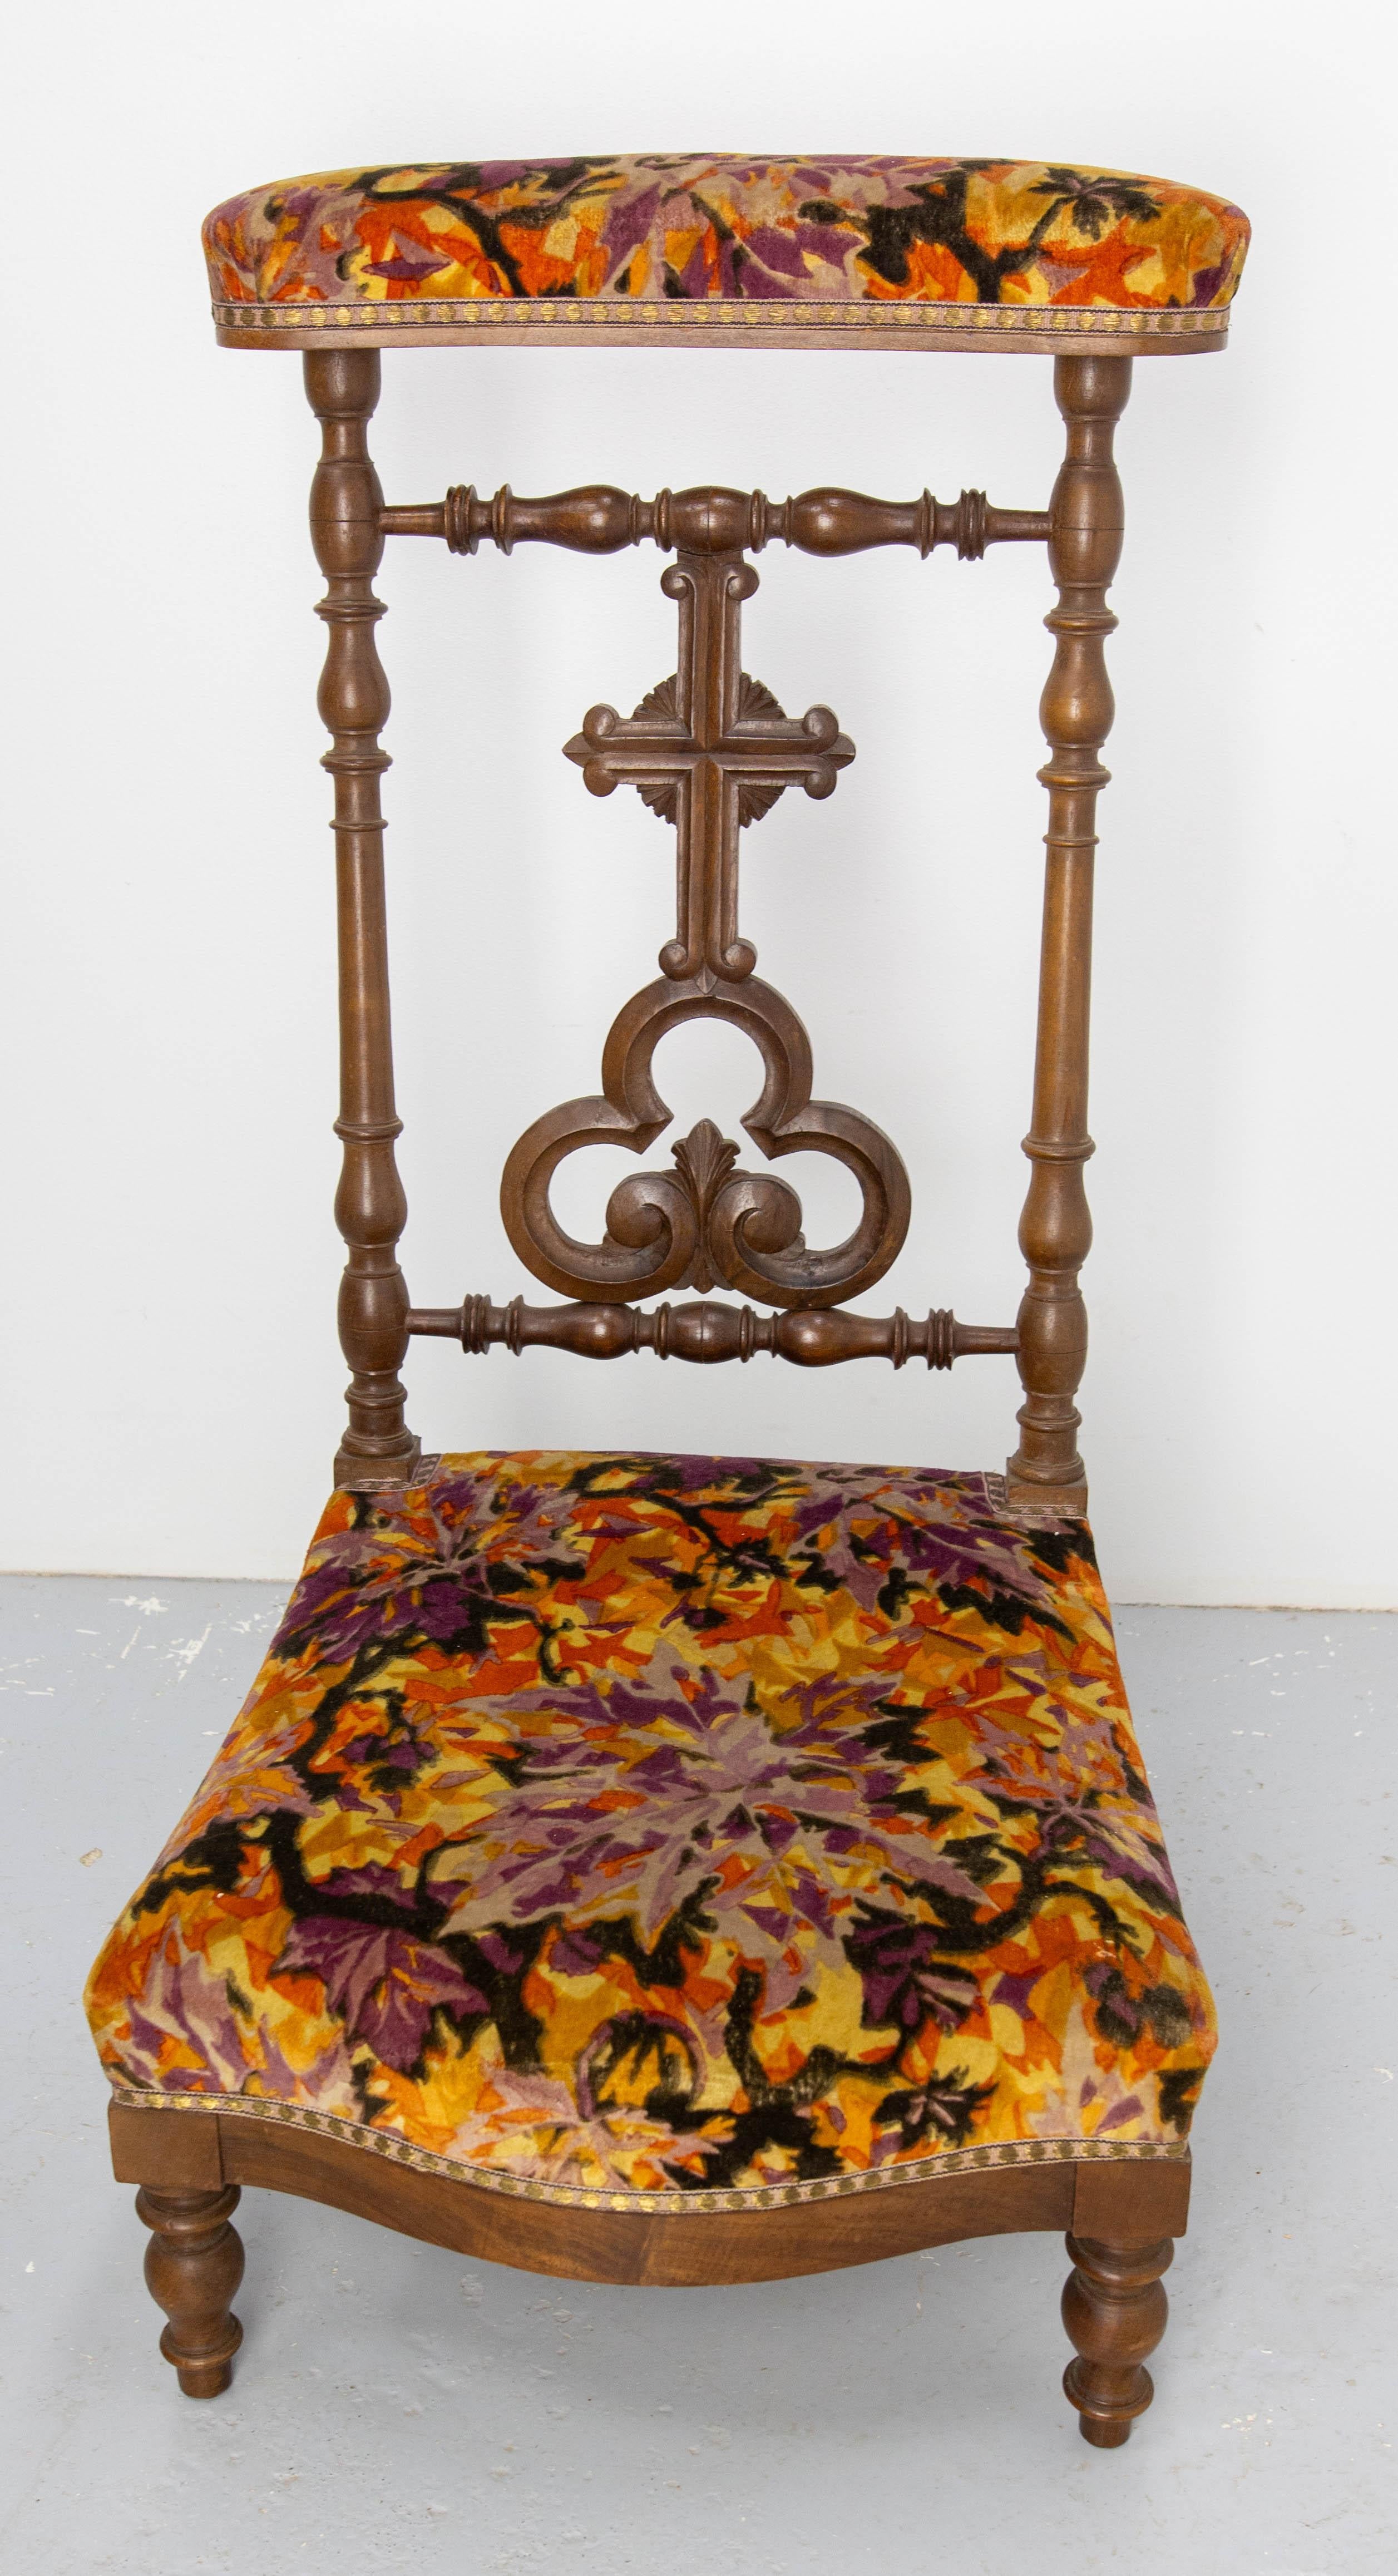 Chaise de prière ou Prie-Dieu d'époque Napoléon III, français, 19ème siècle
Bois exotique et velours avec galon doré. Peut être récupéré pour s'adapter à votre intérieur.
Bon état ancien.
 
  